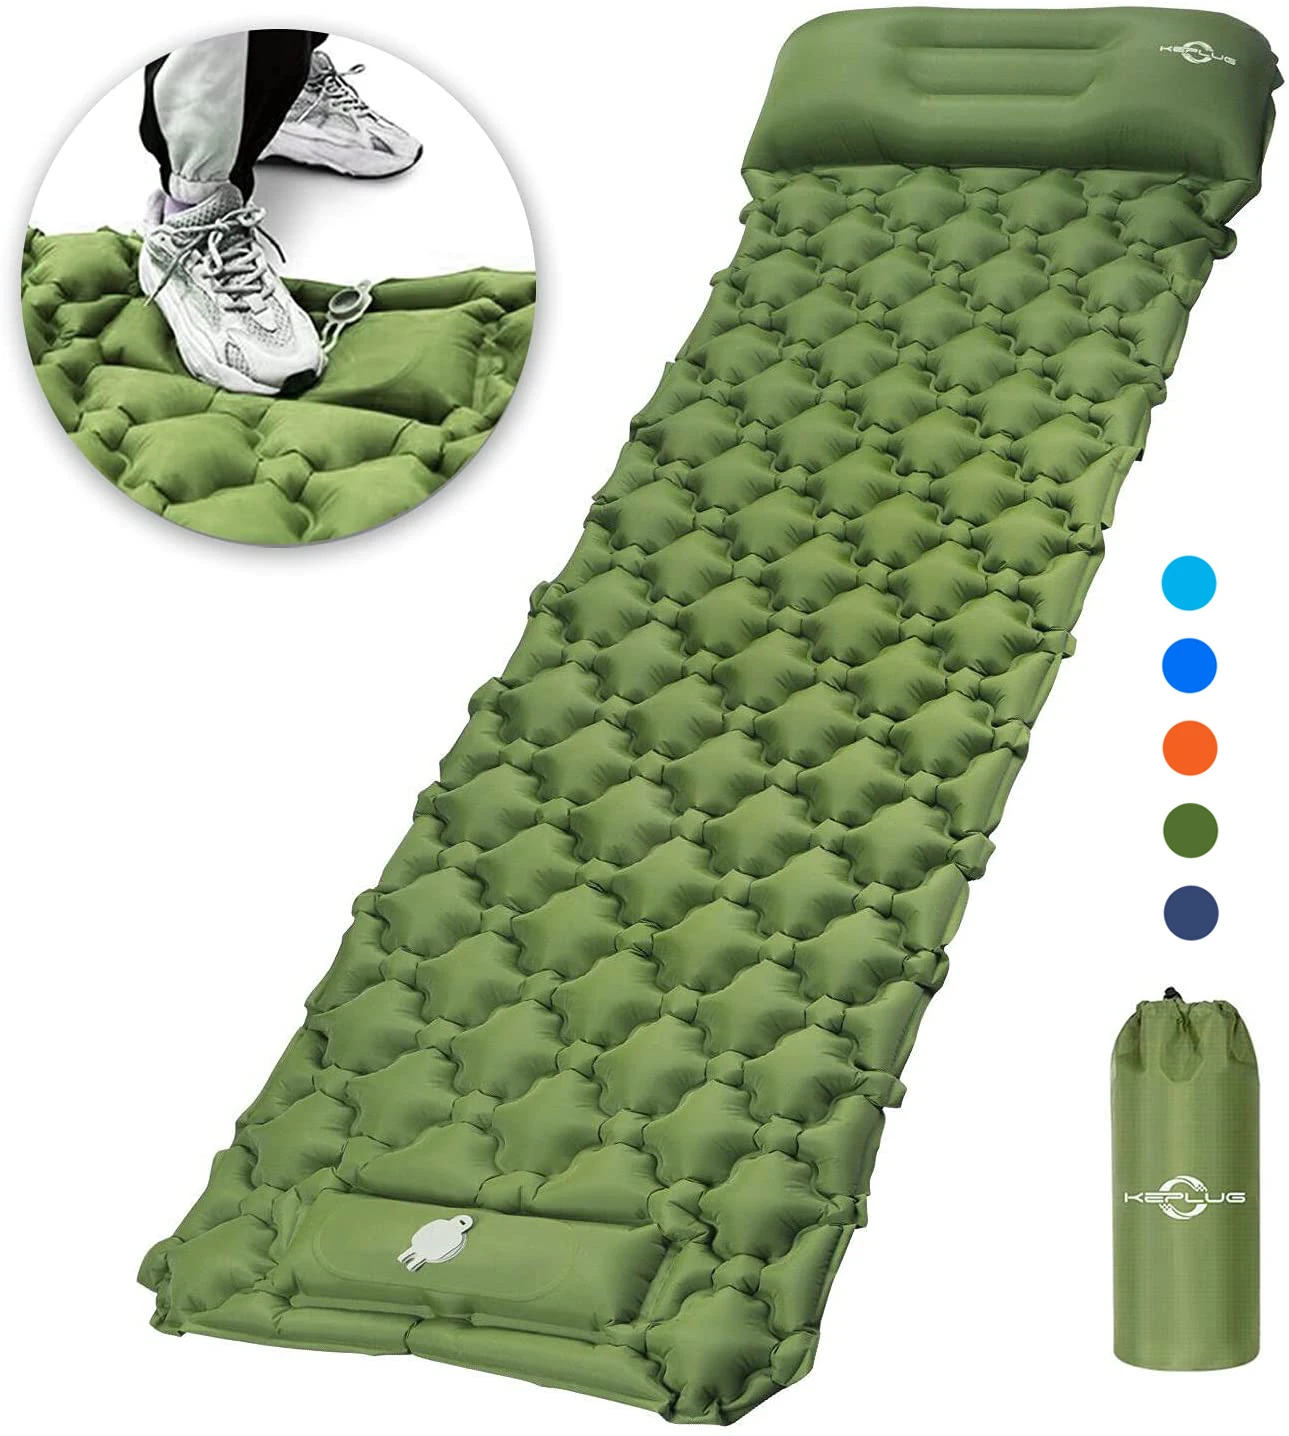 

Сверхлегкий надувной коврик для сна для кемпинга со встроенным насосом, легкий компактный воздушный матрас, лучший коврик для сна